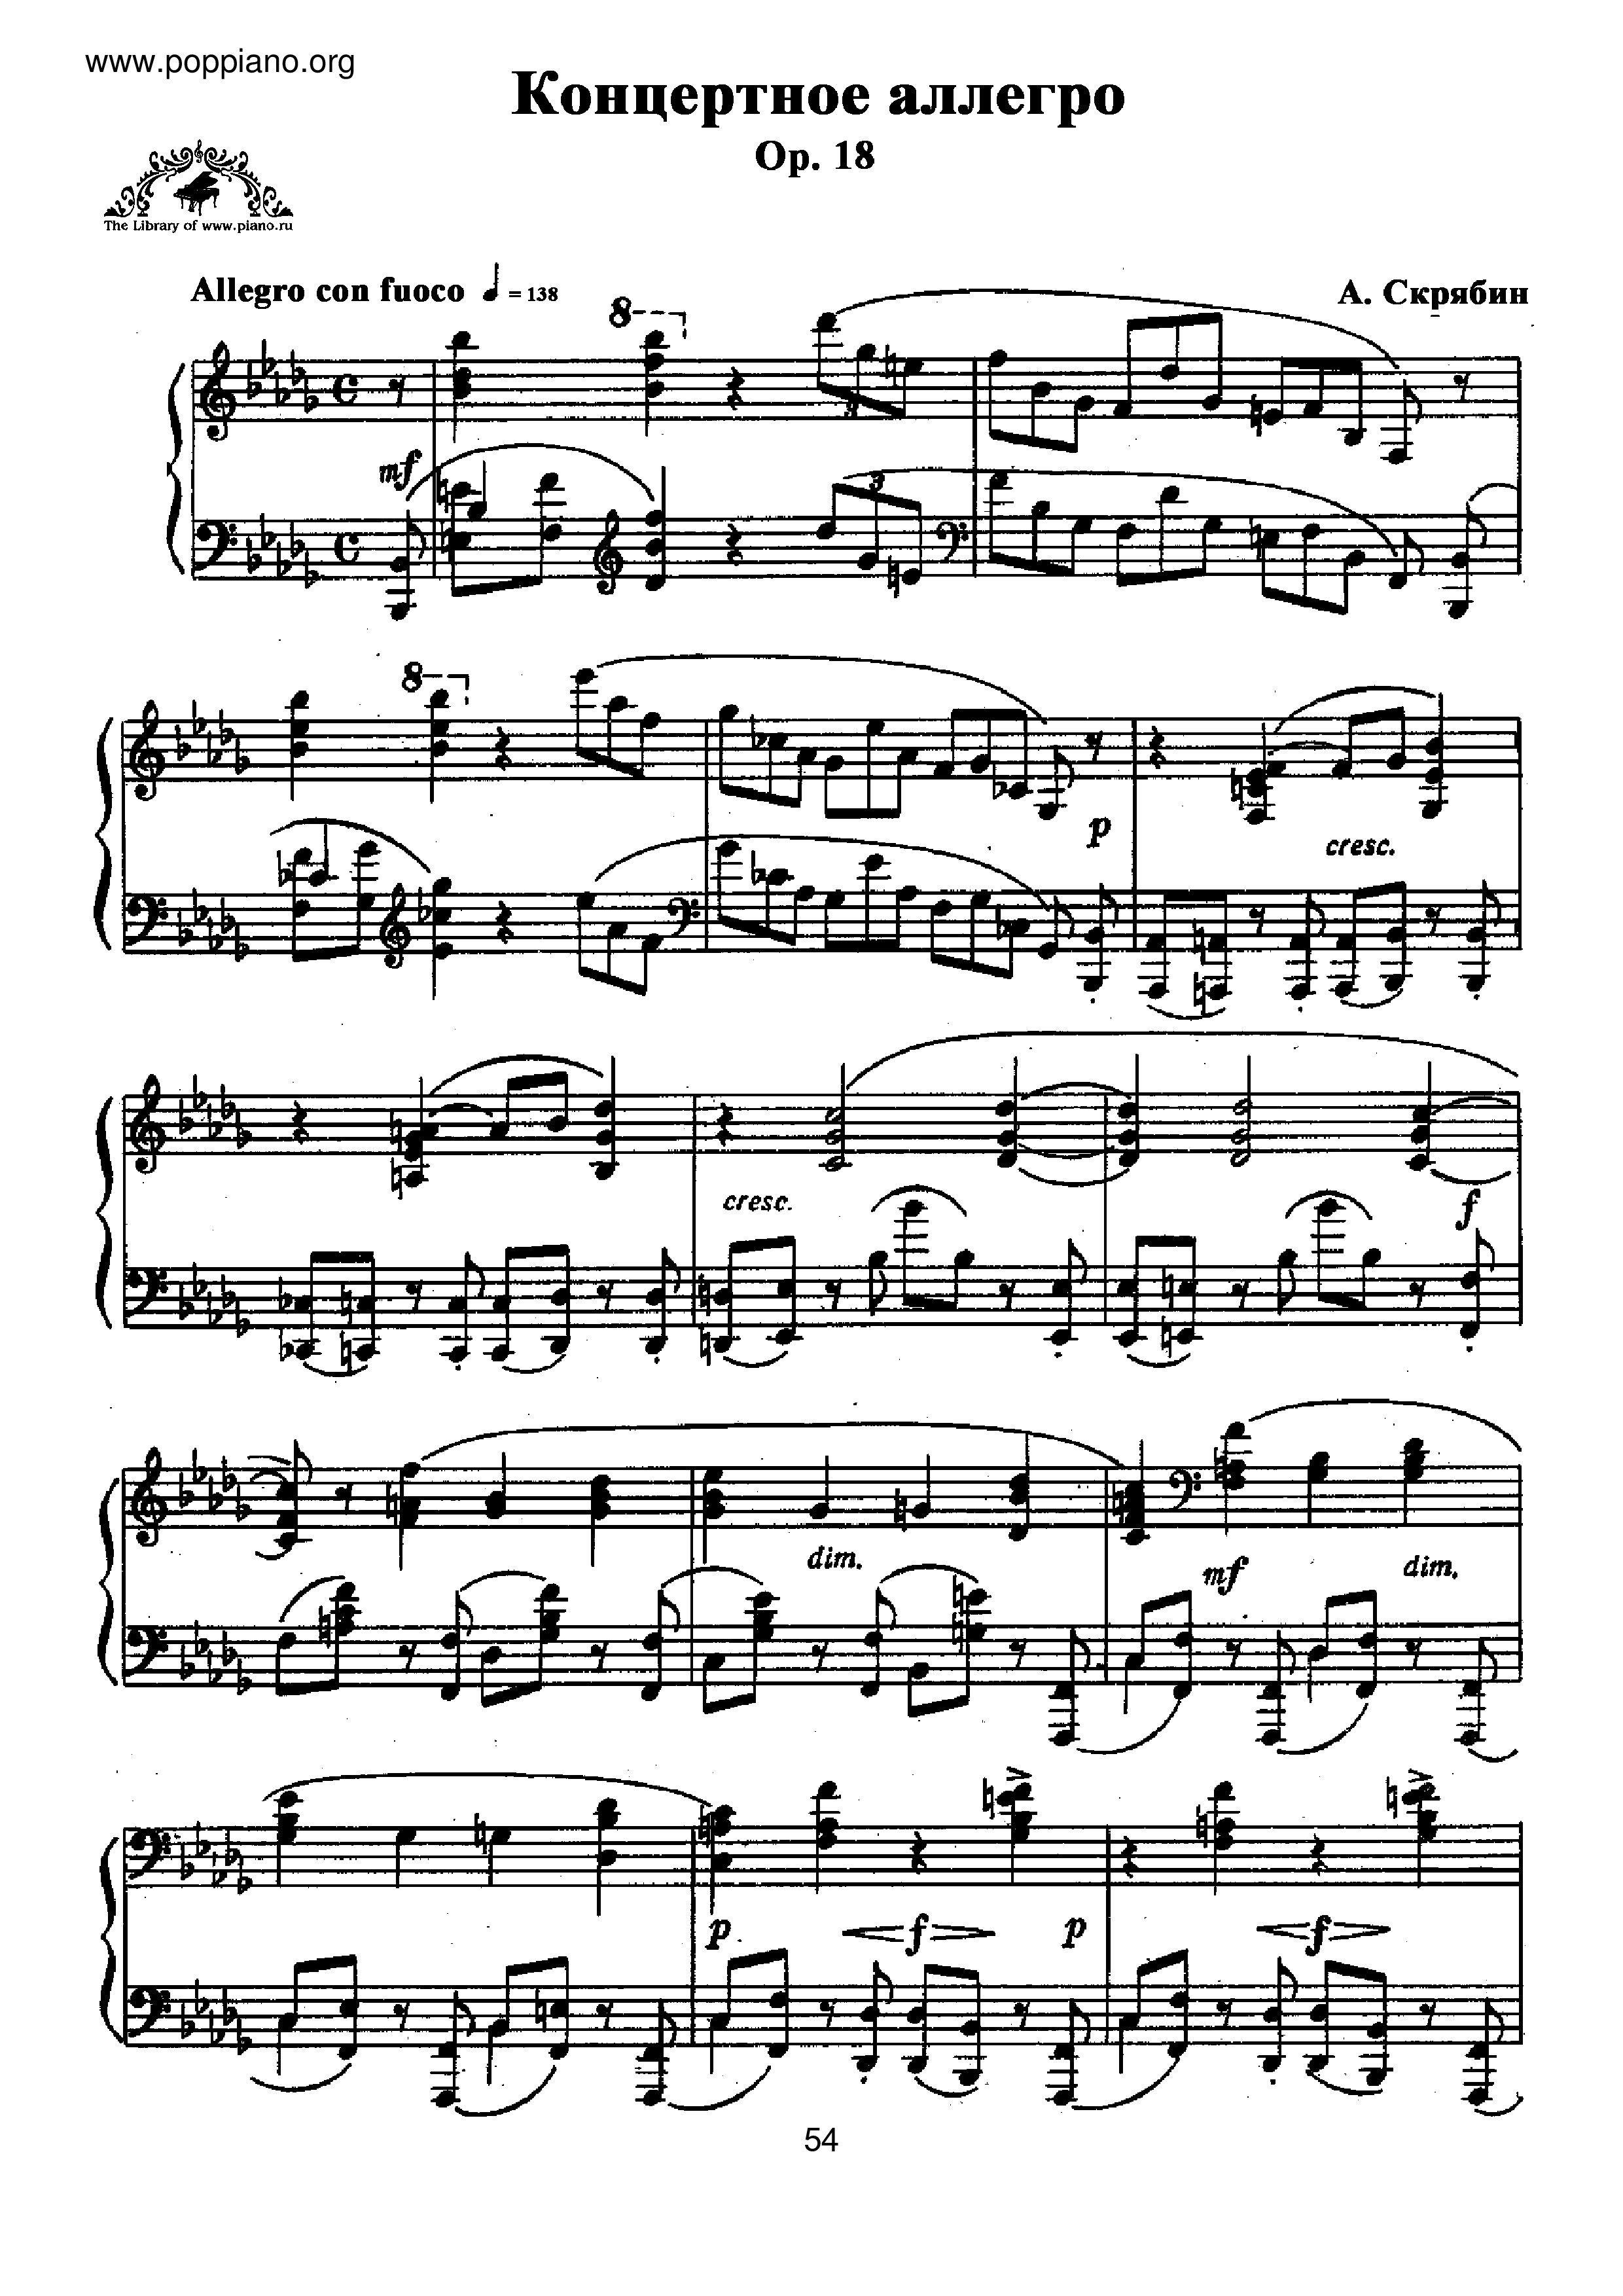 Allegro de Concert, Op.18ピアノ譜